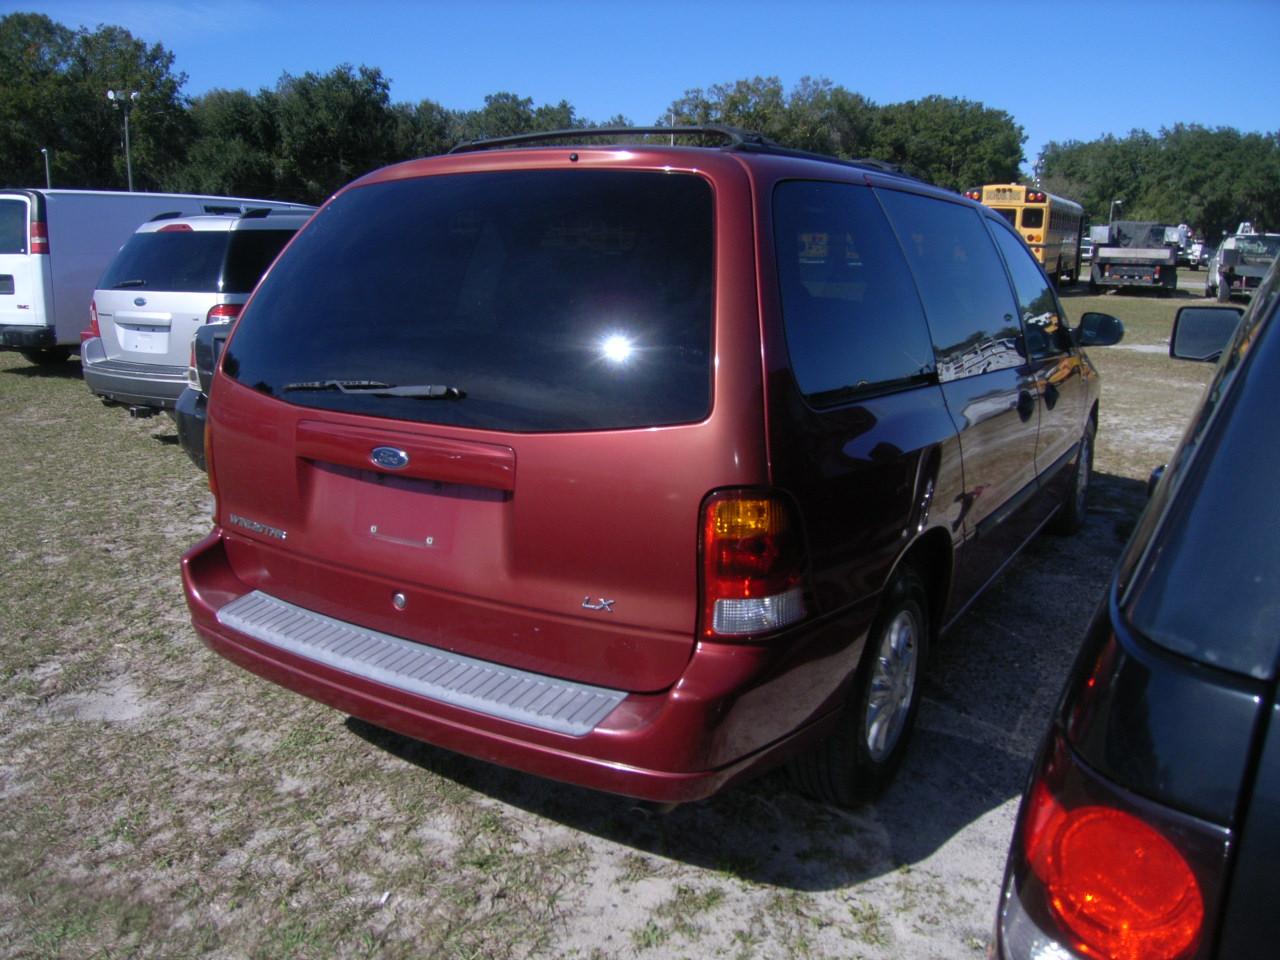 2-07131 (Cars-Van 4D)  Seller:Private/Dealer 2002 FORD WINDSTAR